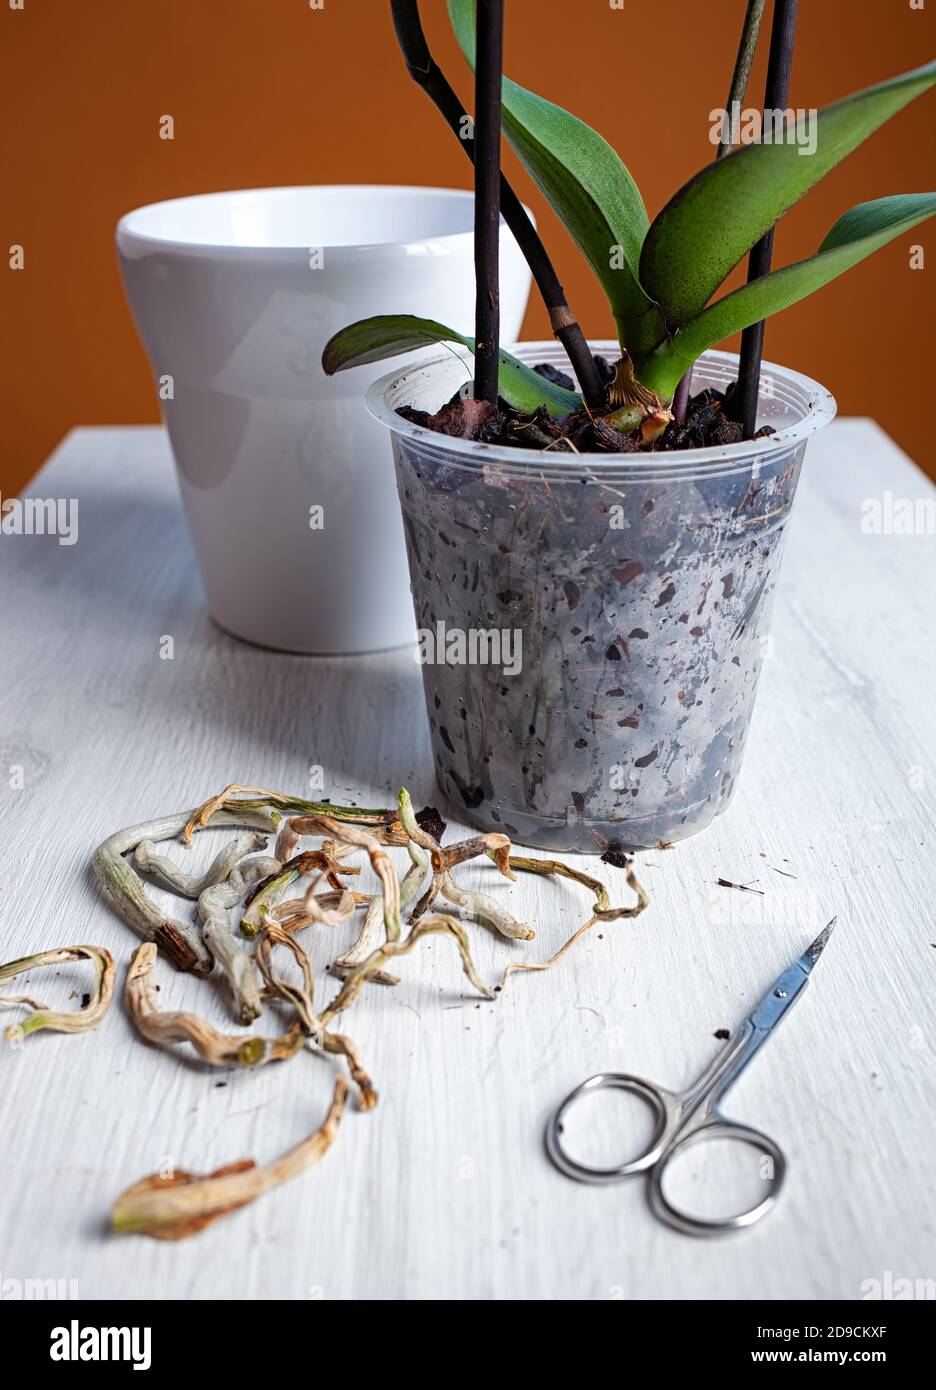 Dopo aver tagliato le radici marcite e secche, pentite l'orchidea. Foto Stock